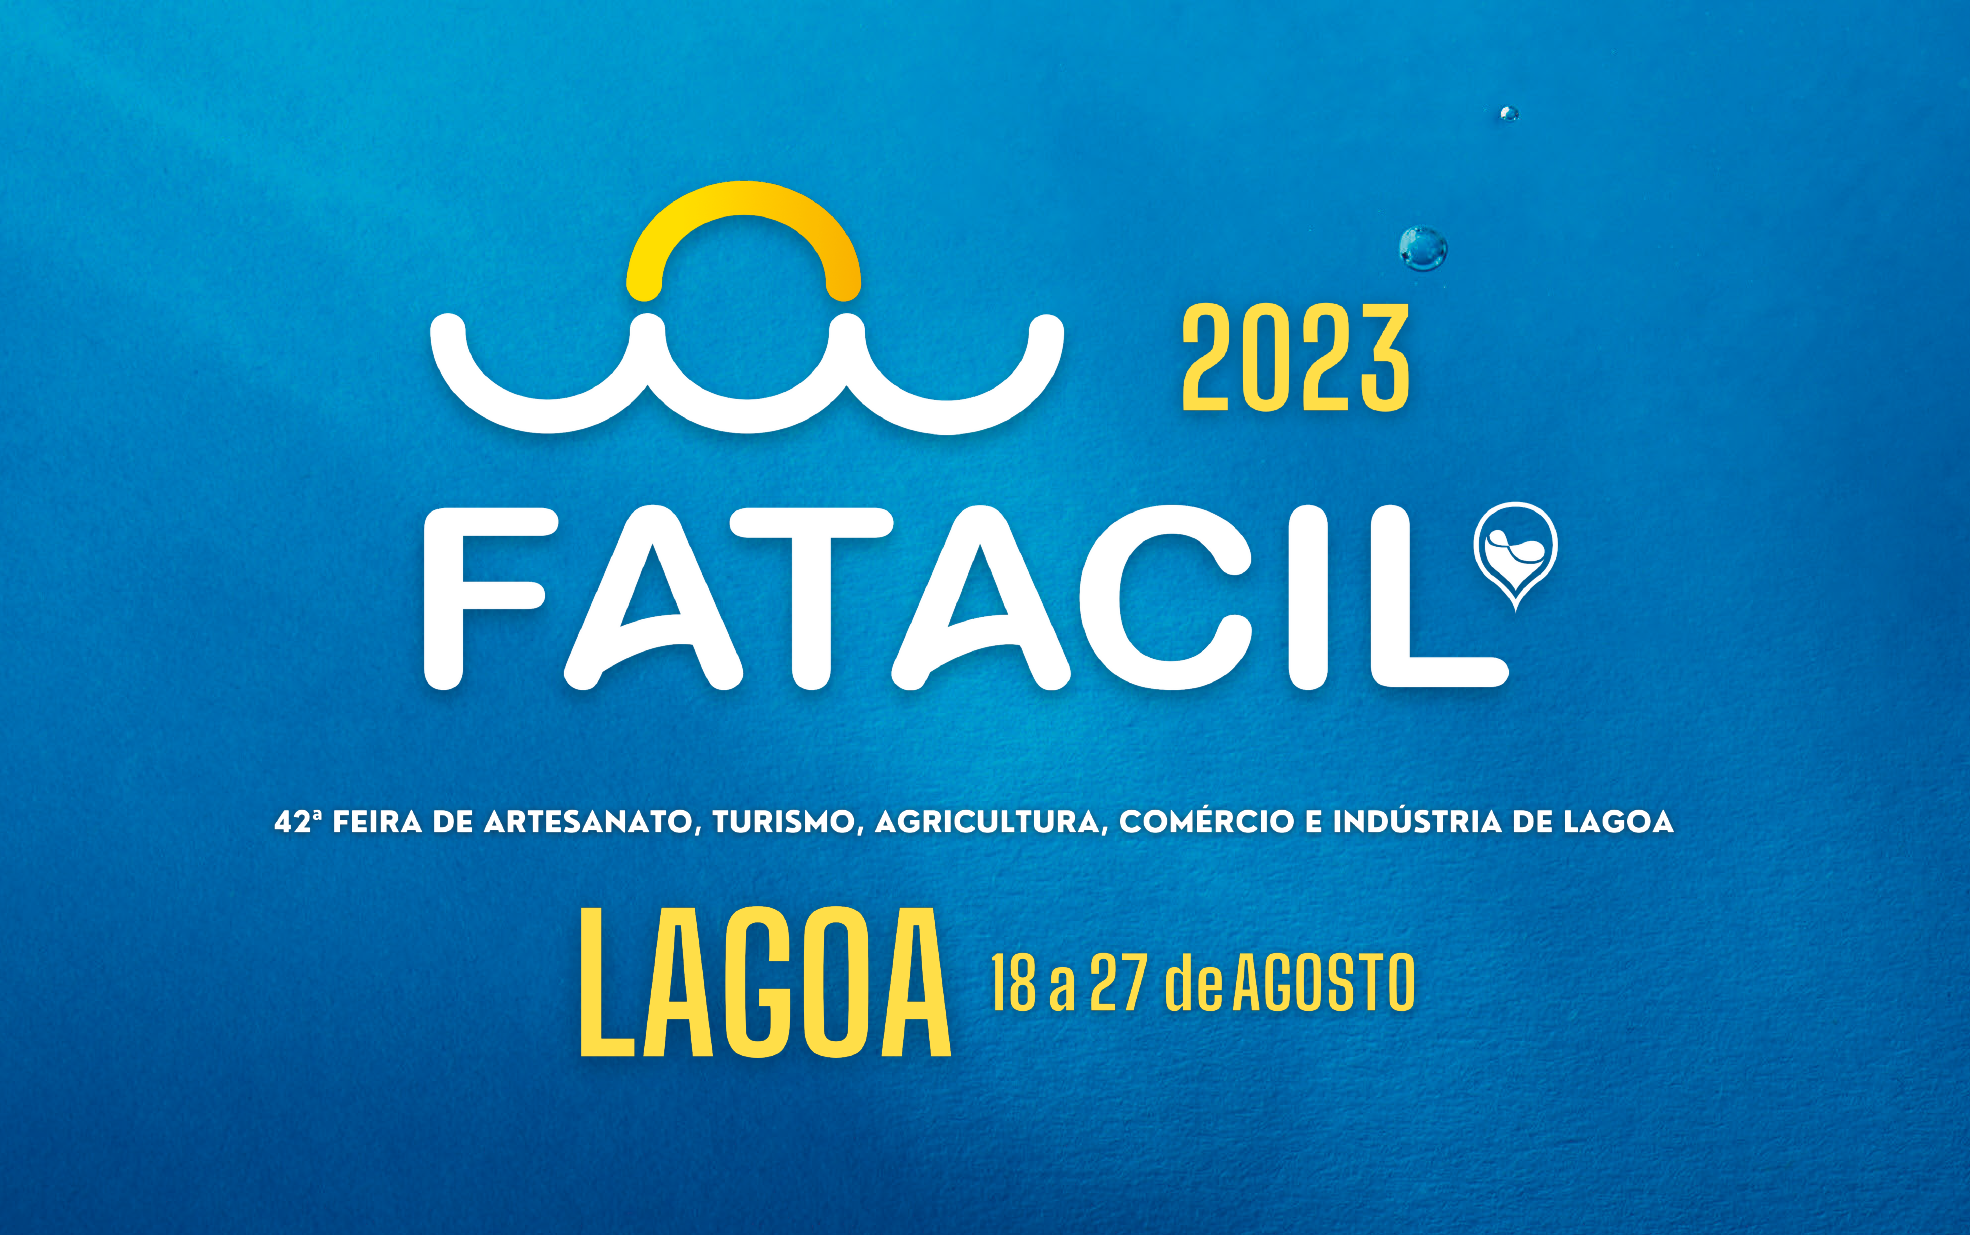 FATACIL 2023 - De 18 a 27 de agosto mergulhe no maior Evento a Sul do Tejo